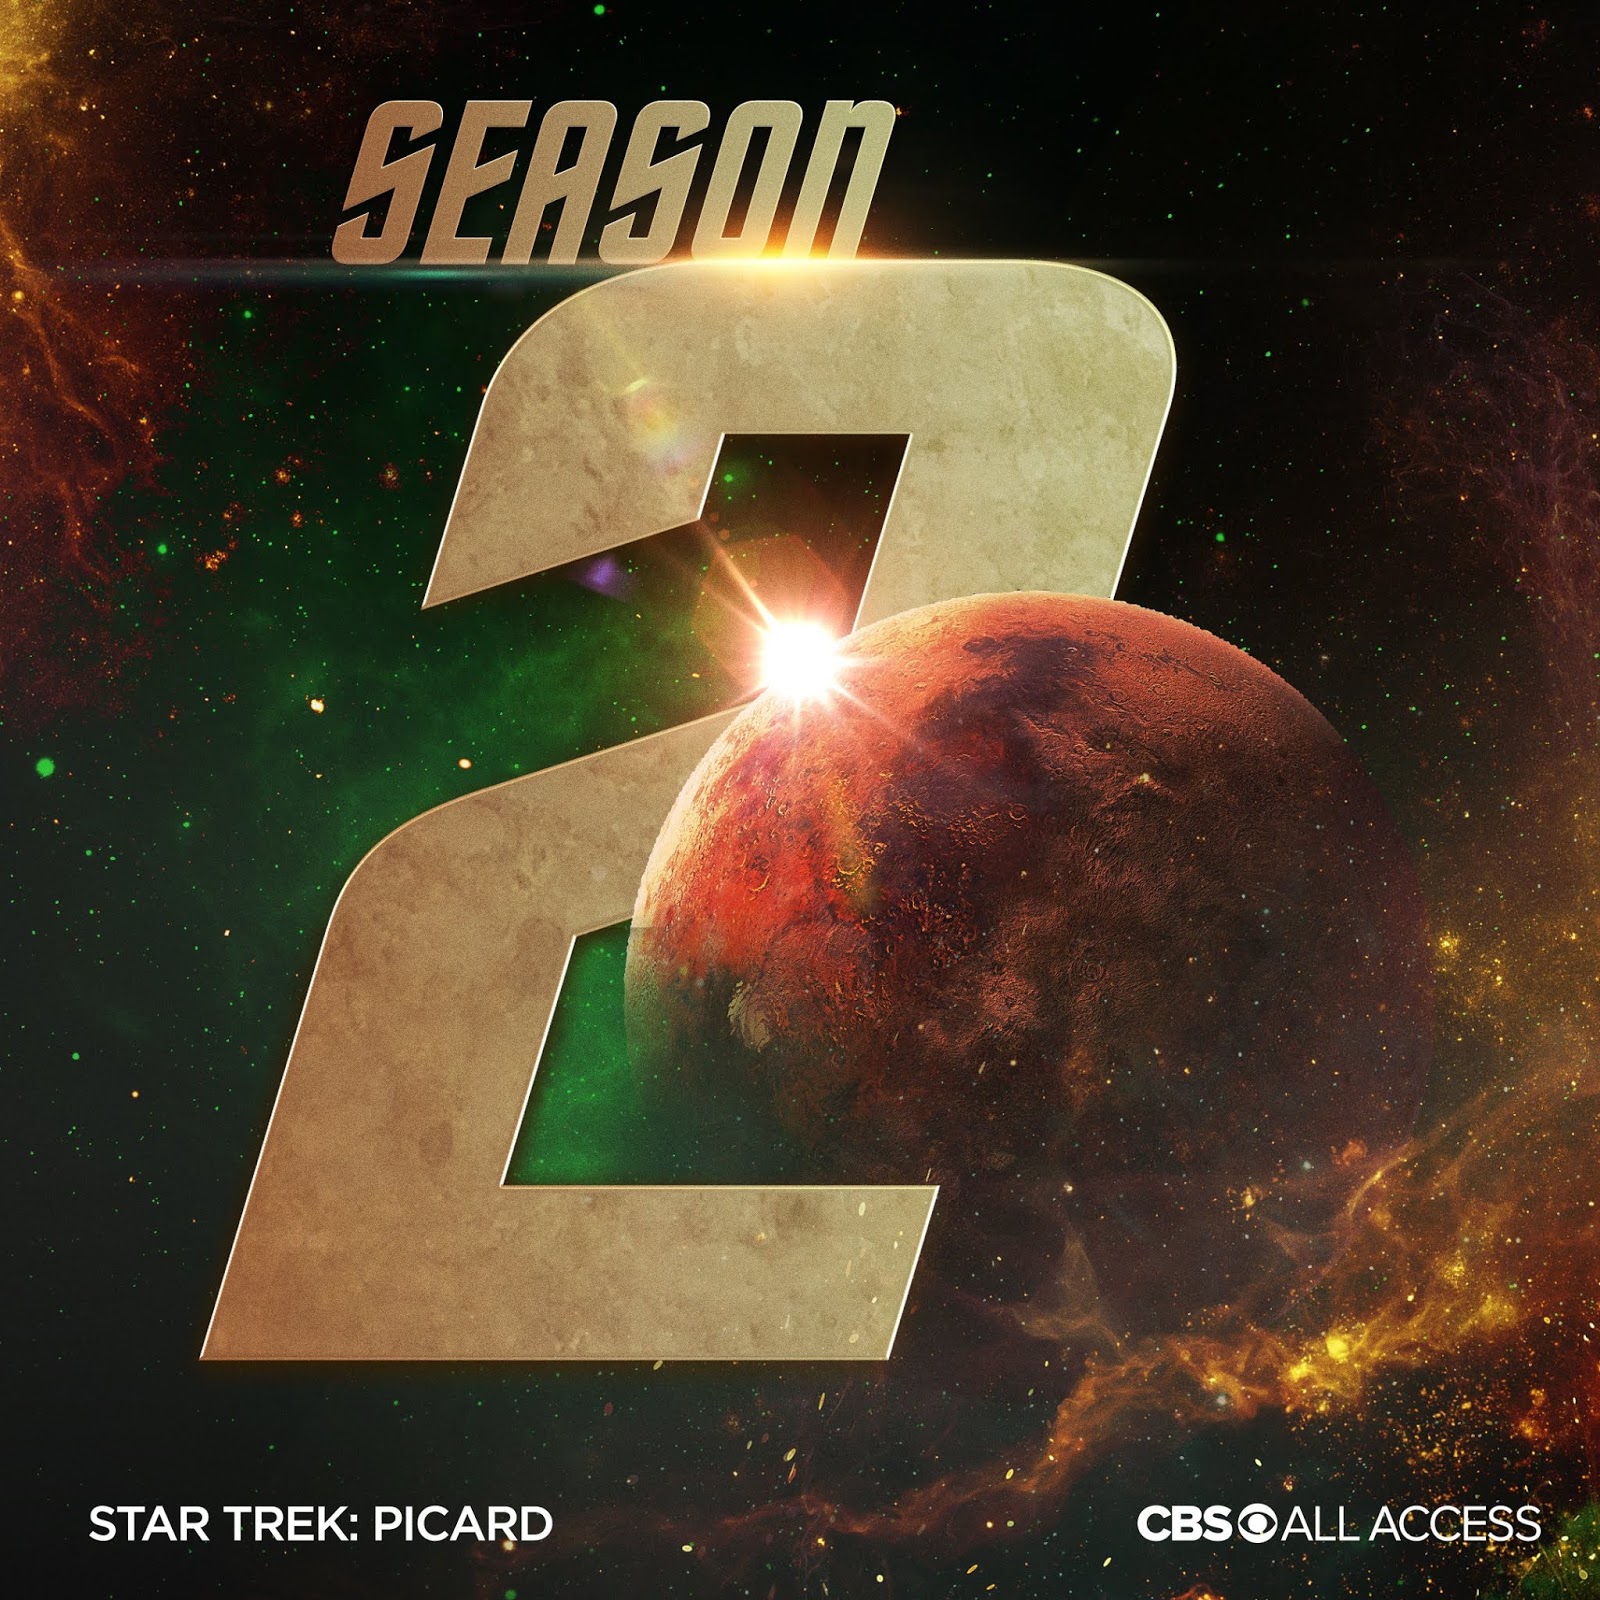 STAR TREK | Segunda temporada da série PICARD indica o retorno do personagem Q